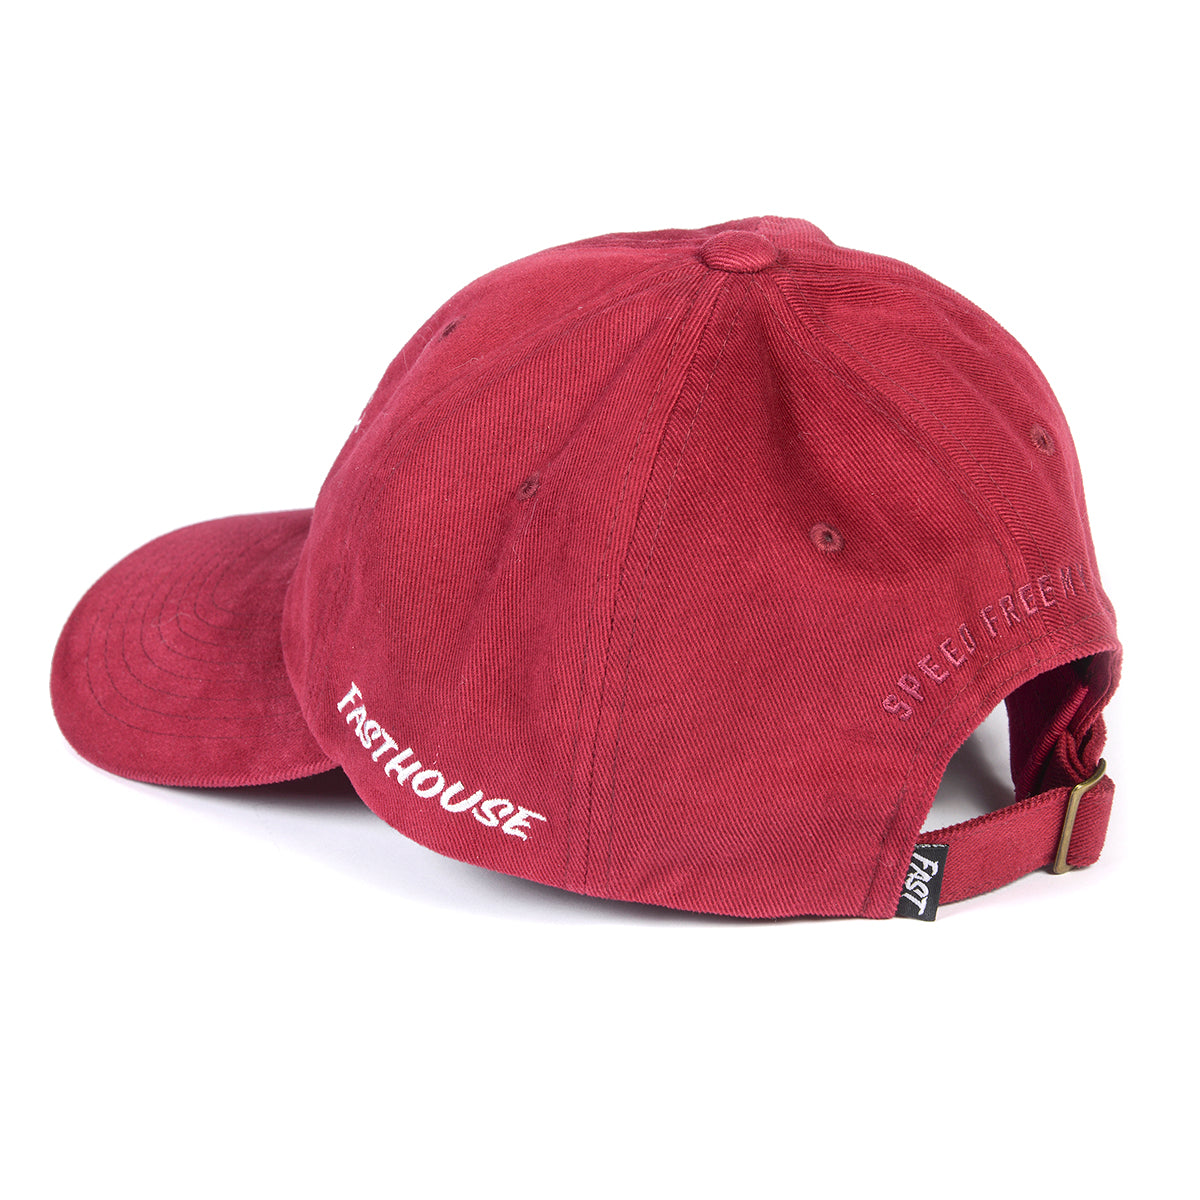 Die Happy Hat - Vintage Red